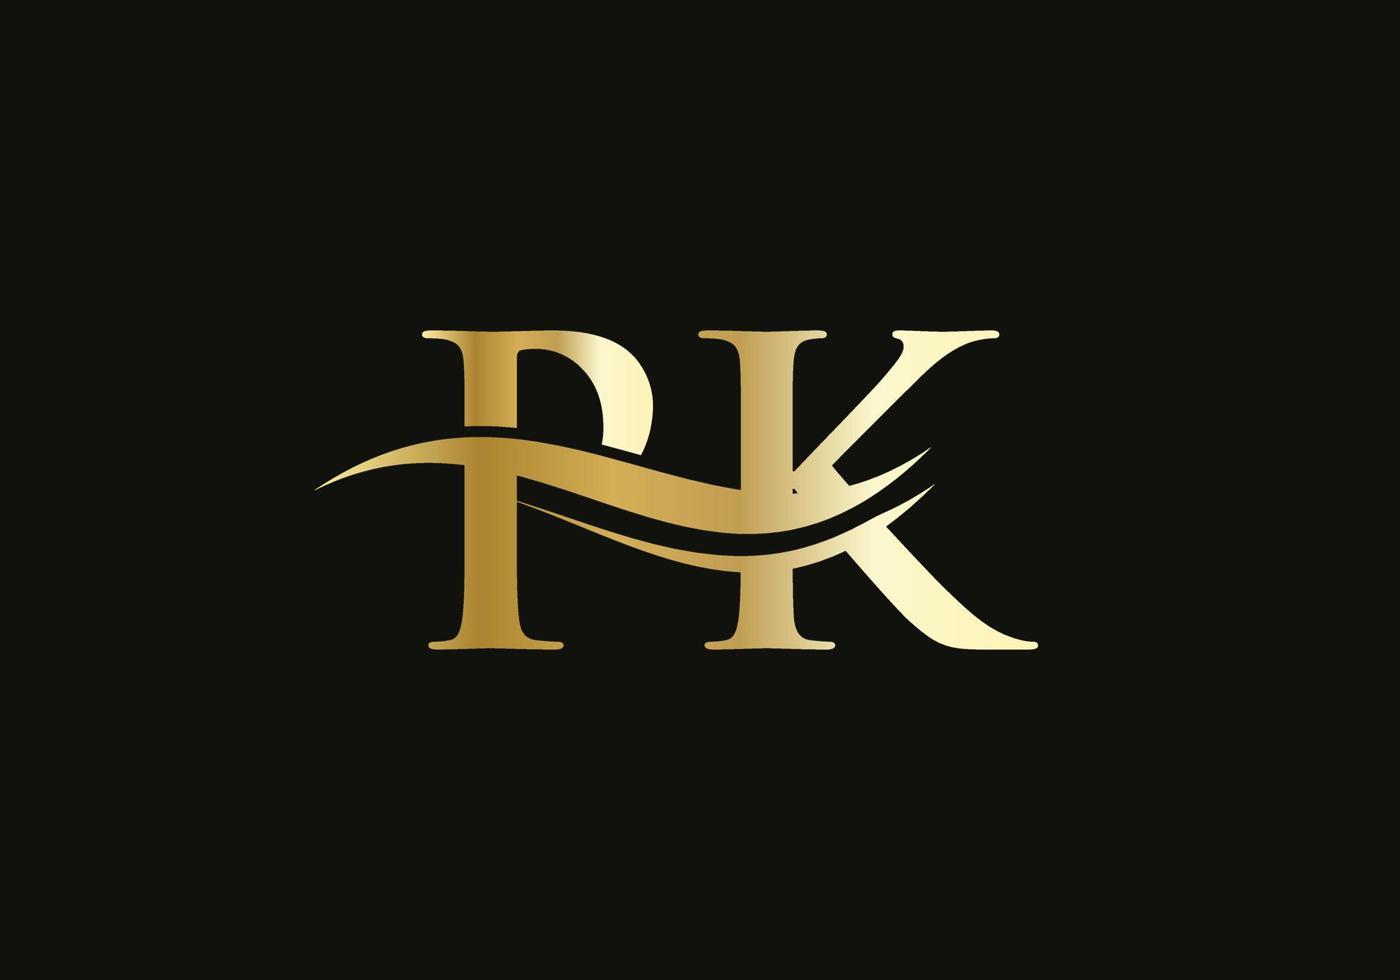 diseño moderno del logotipo pk para la identidad empresarial y empresarial. carta pk creativa con concepto de lujo vector